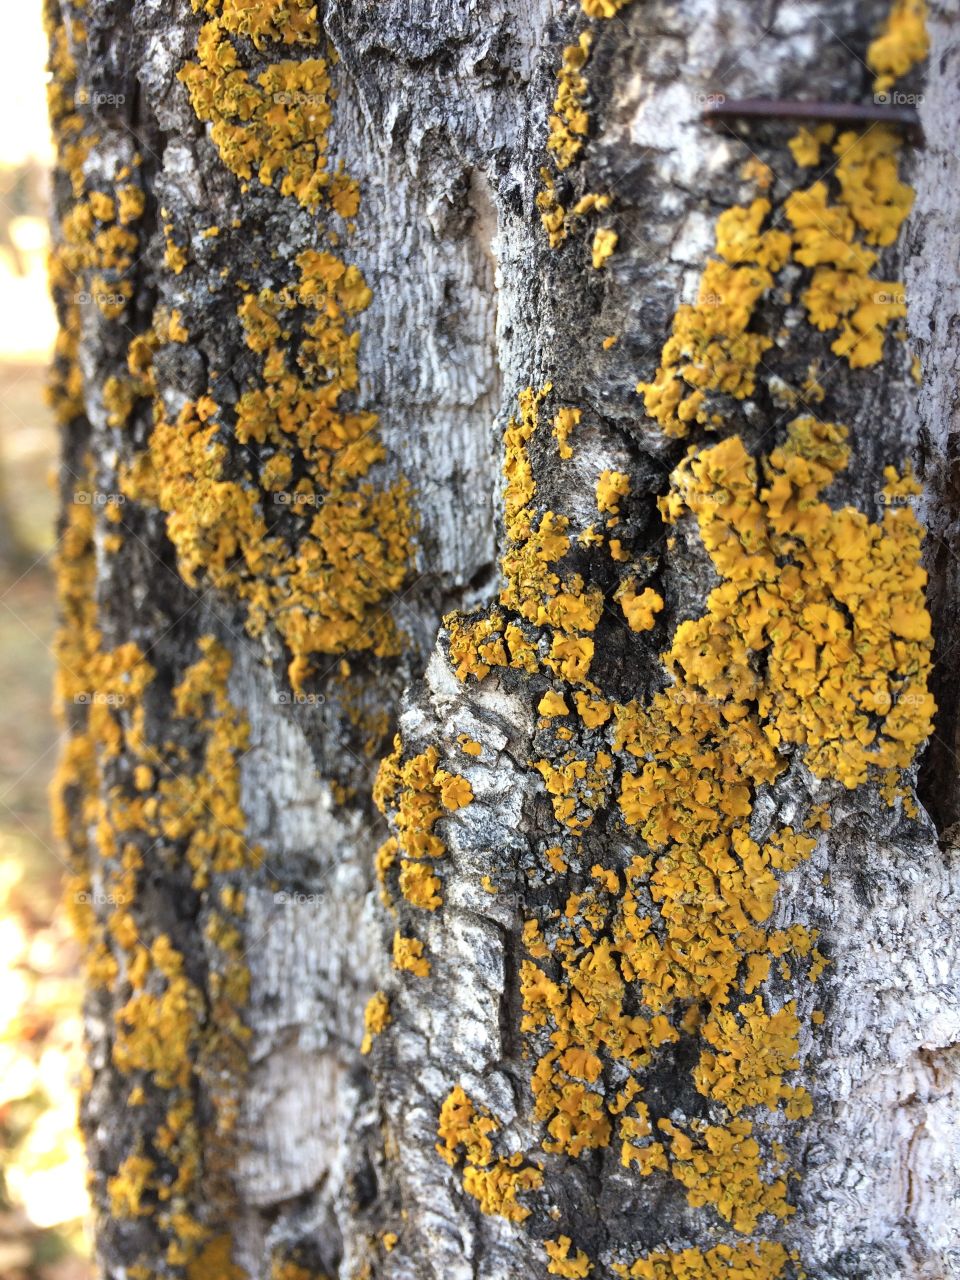 Lichen on bark close up 